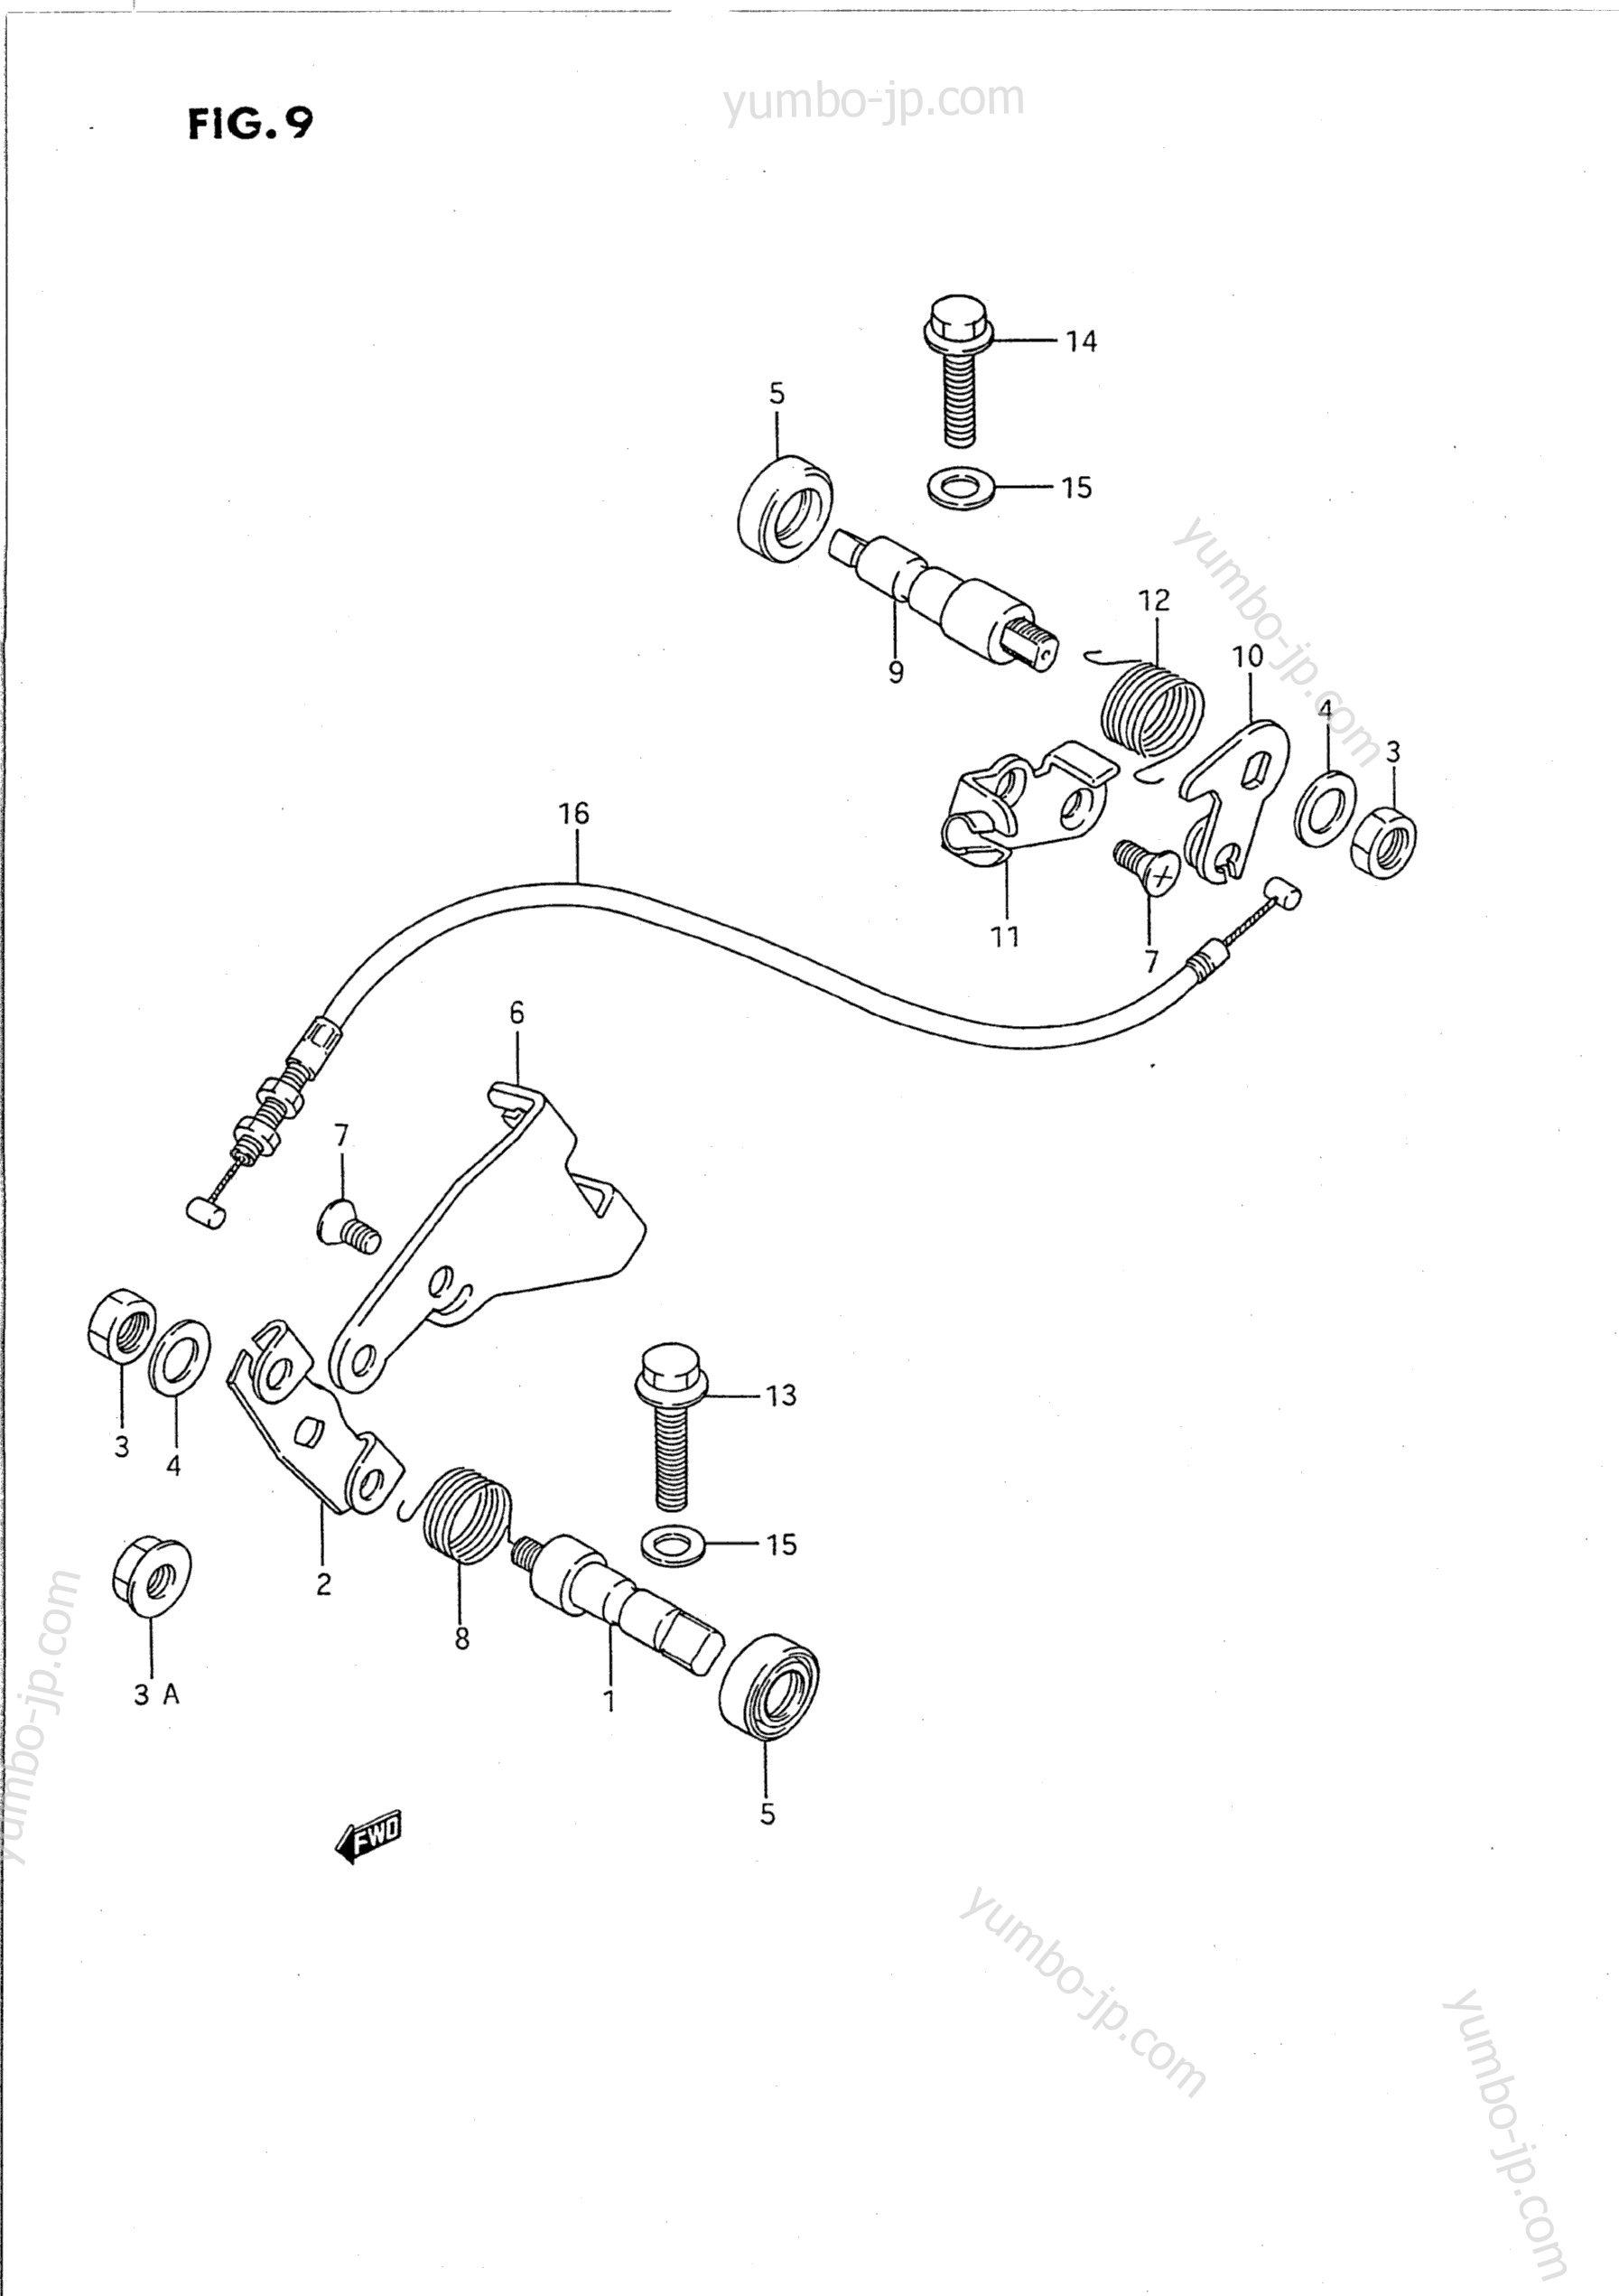 DECOMP SHAFT for motorcycles SUZUKI Intruder (VS1400GLP) 1991 year